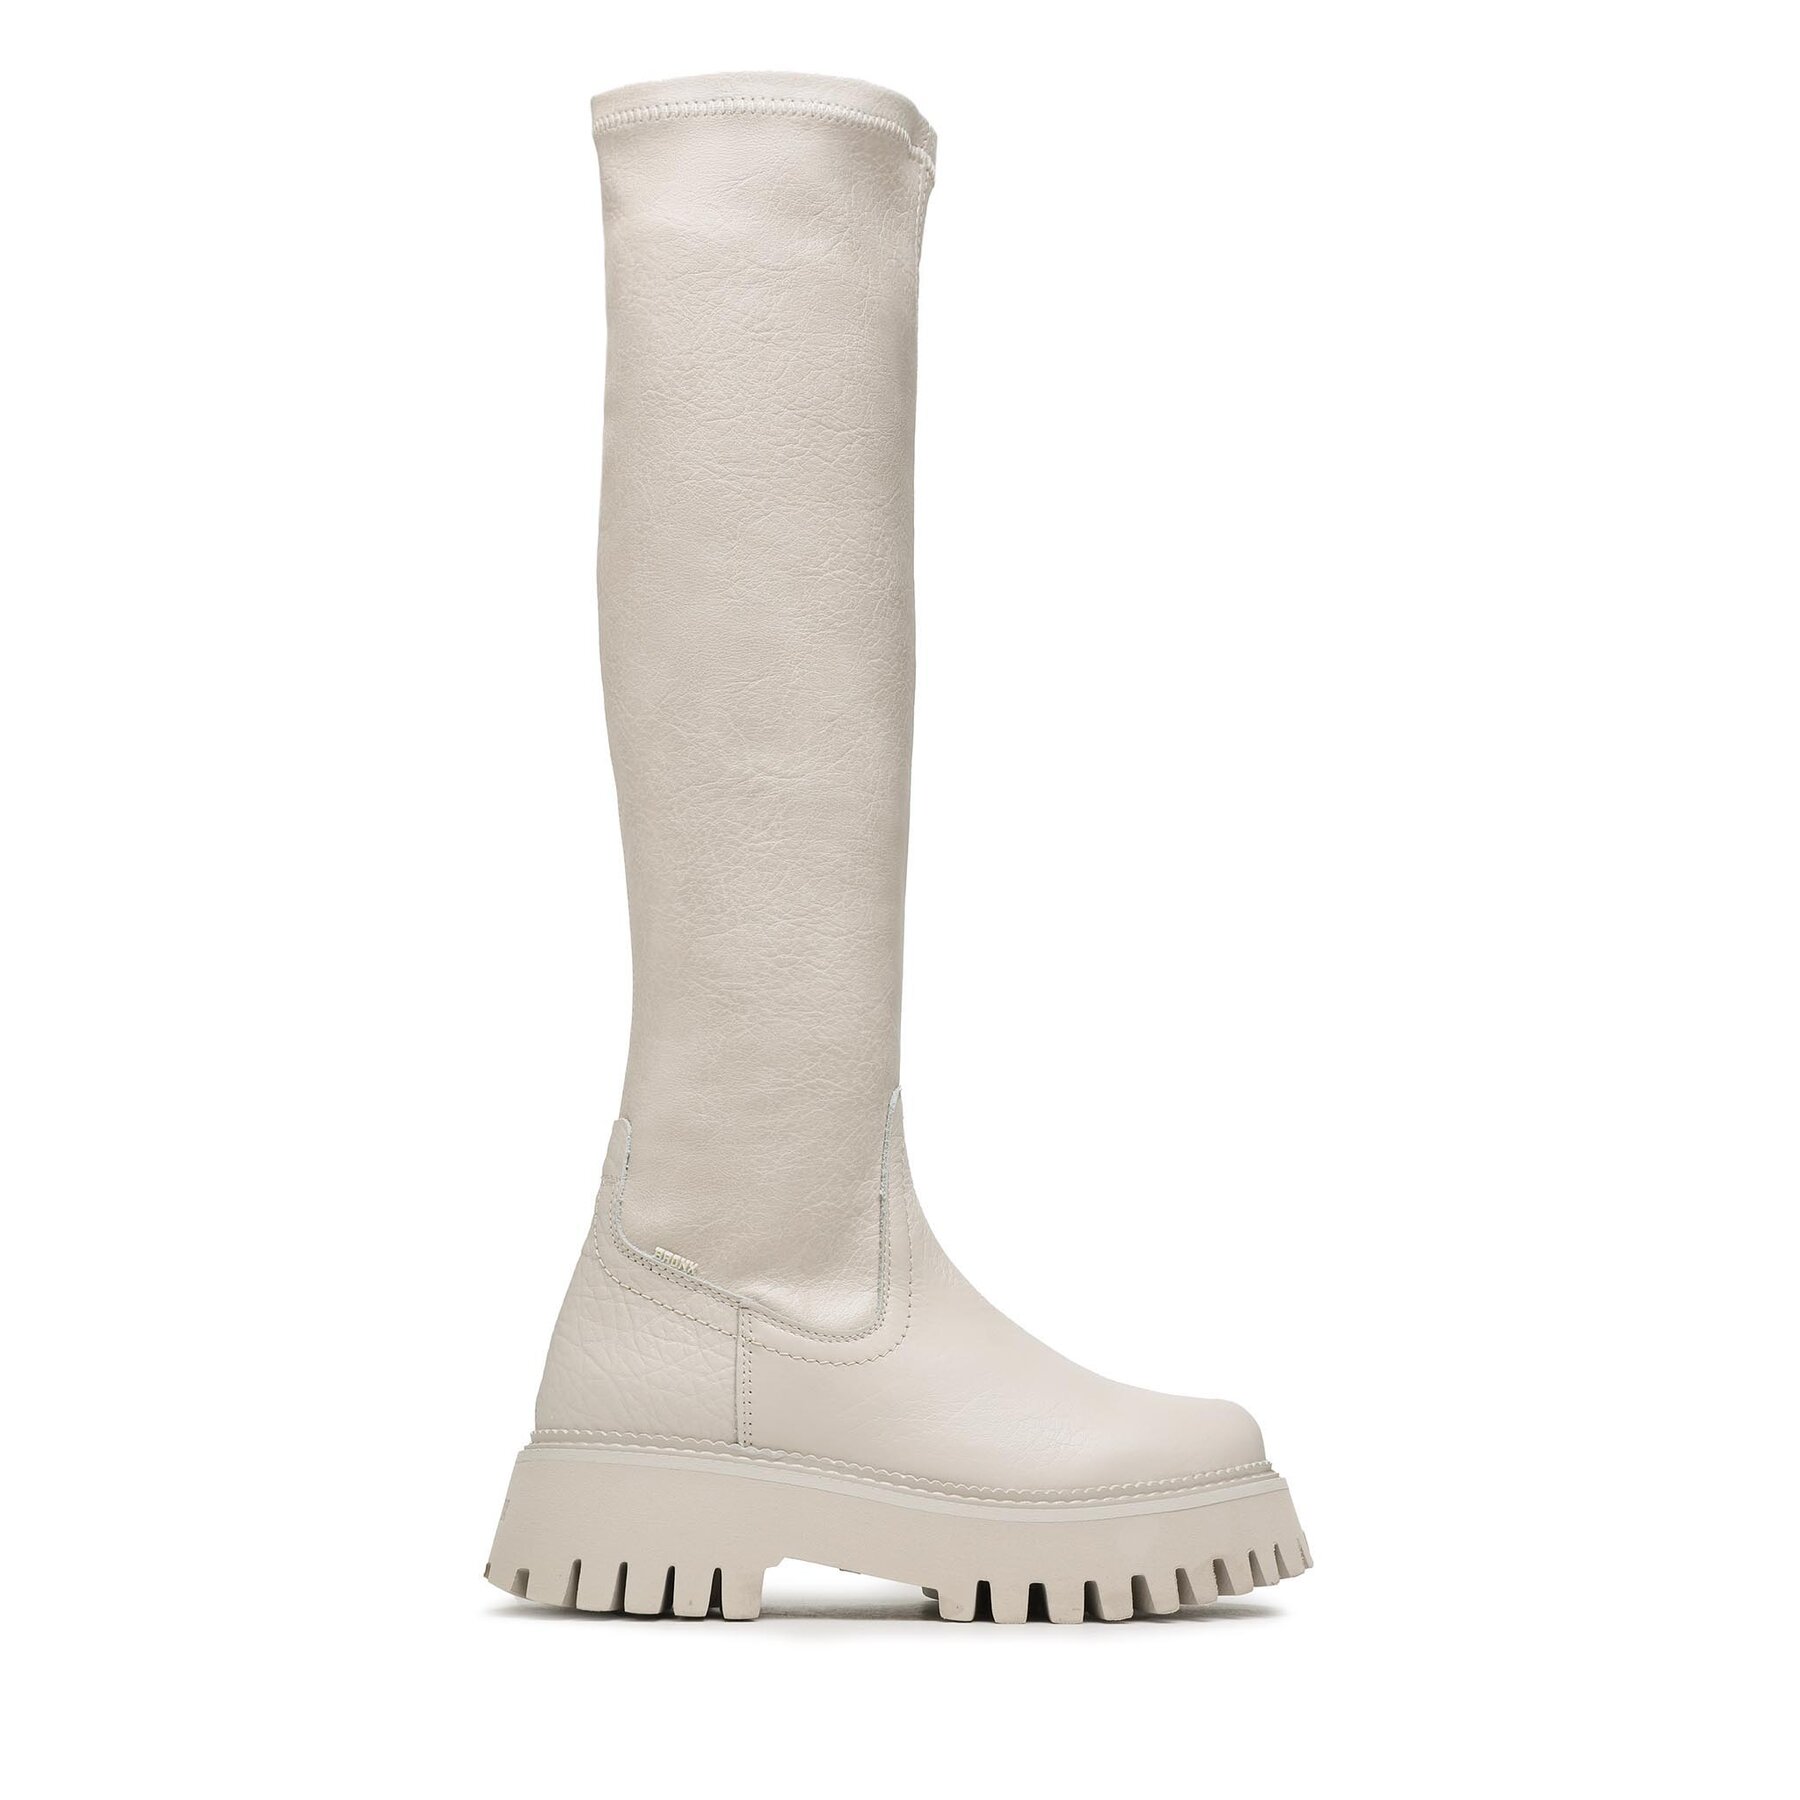 Stiefel Bronx High boots 14211-G Winter White 1257 von Bronx